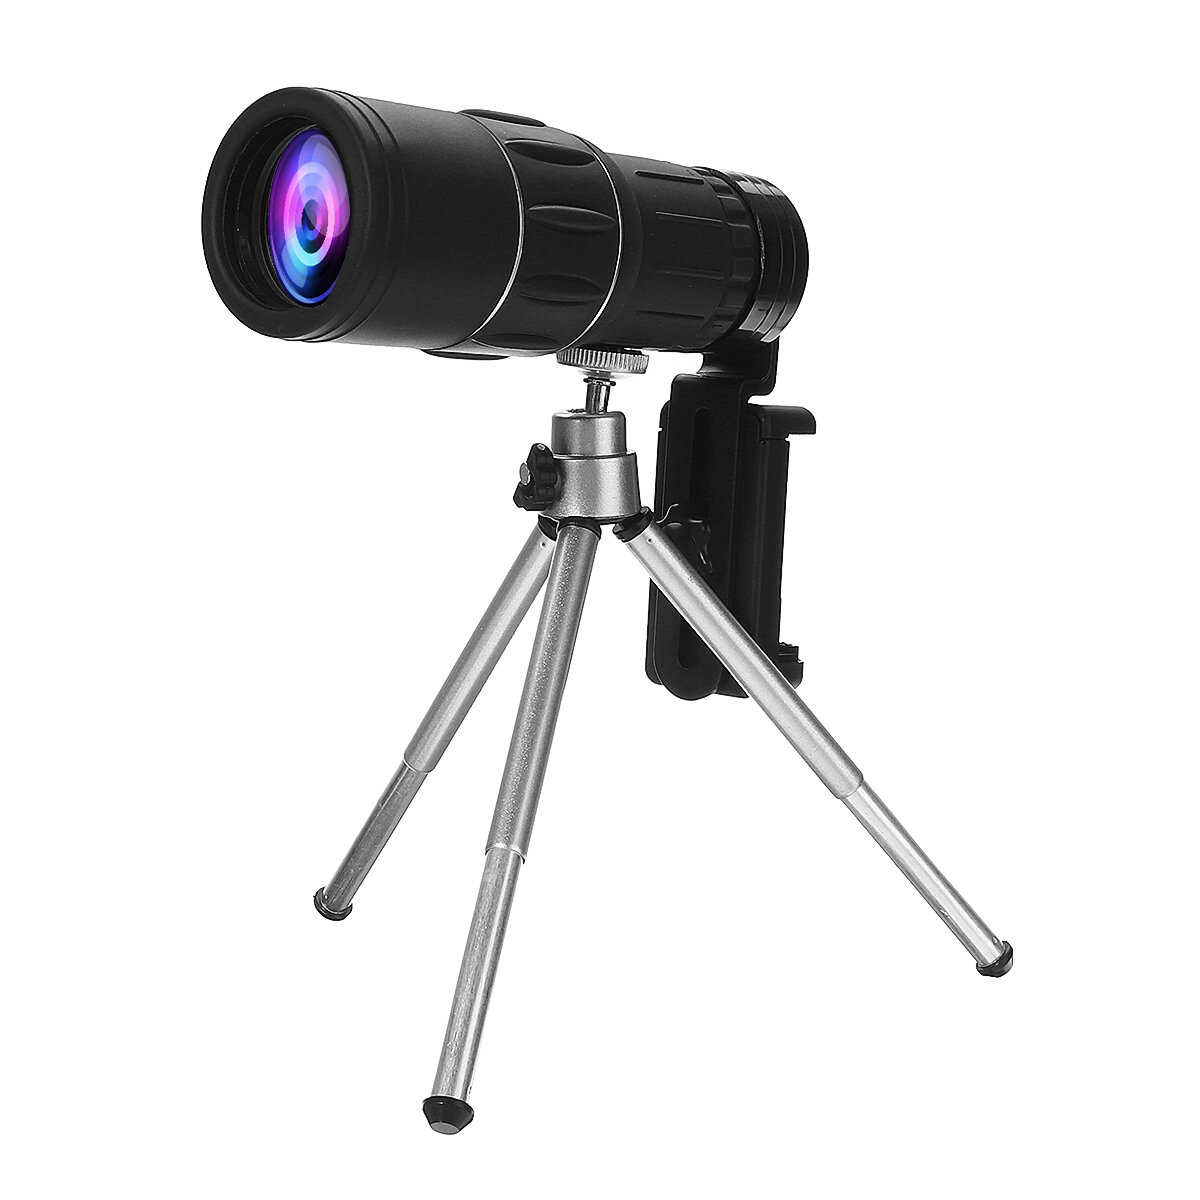 Разведывательный монокулярный телескоп 40X60 для открытых пространств, походов, путешествий, широкоугольный HD ночной вид с треногой и зажимом.